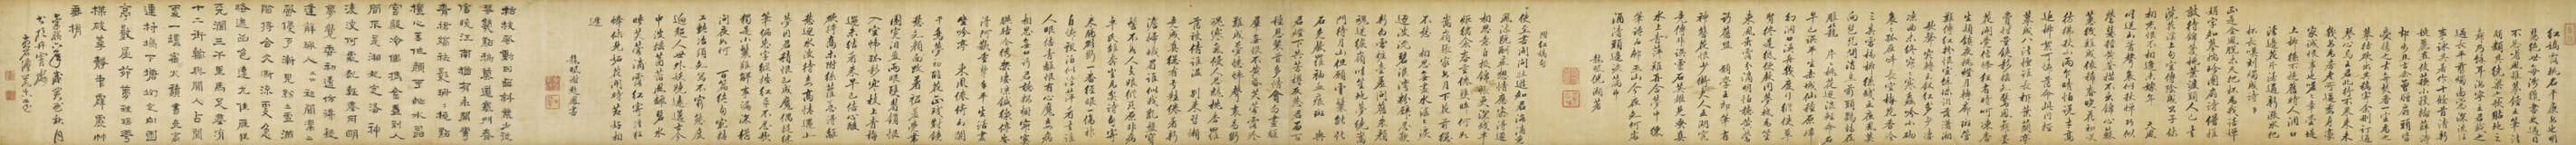 NI HAO(17TH CENTURY)/ XIE QIFENG(17TH CENTURY)/ FA RUOZHEN (1613-1696) - фото 2